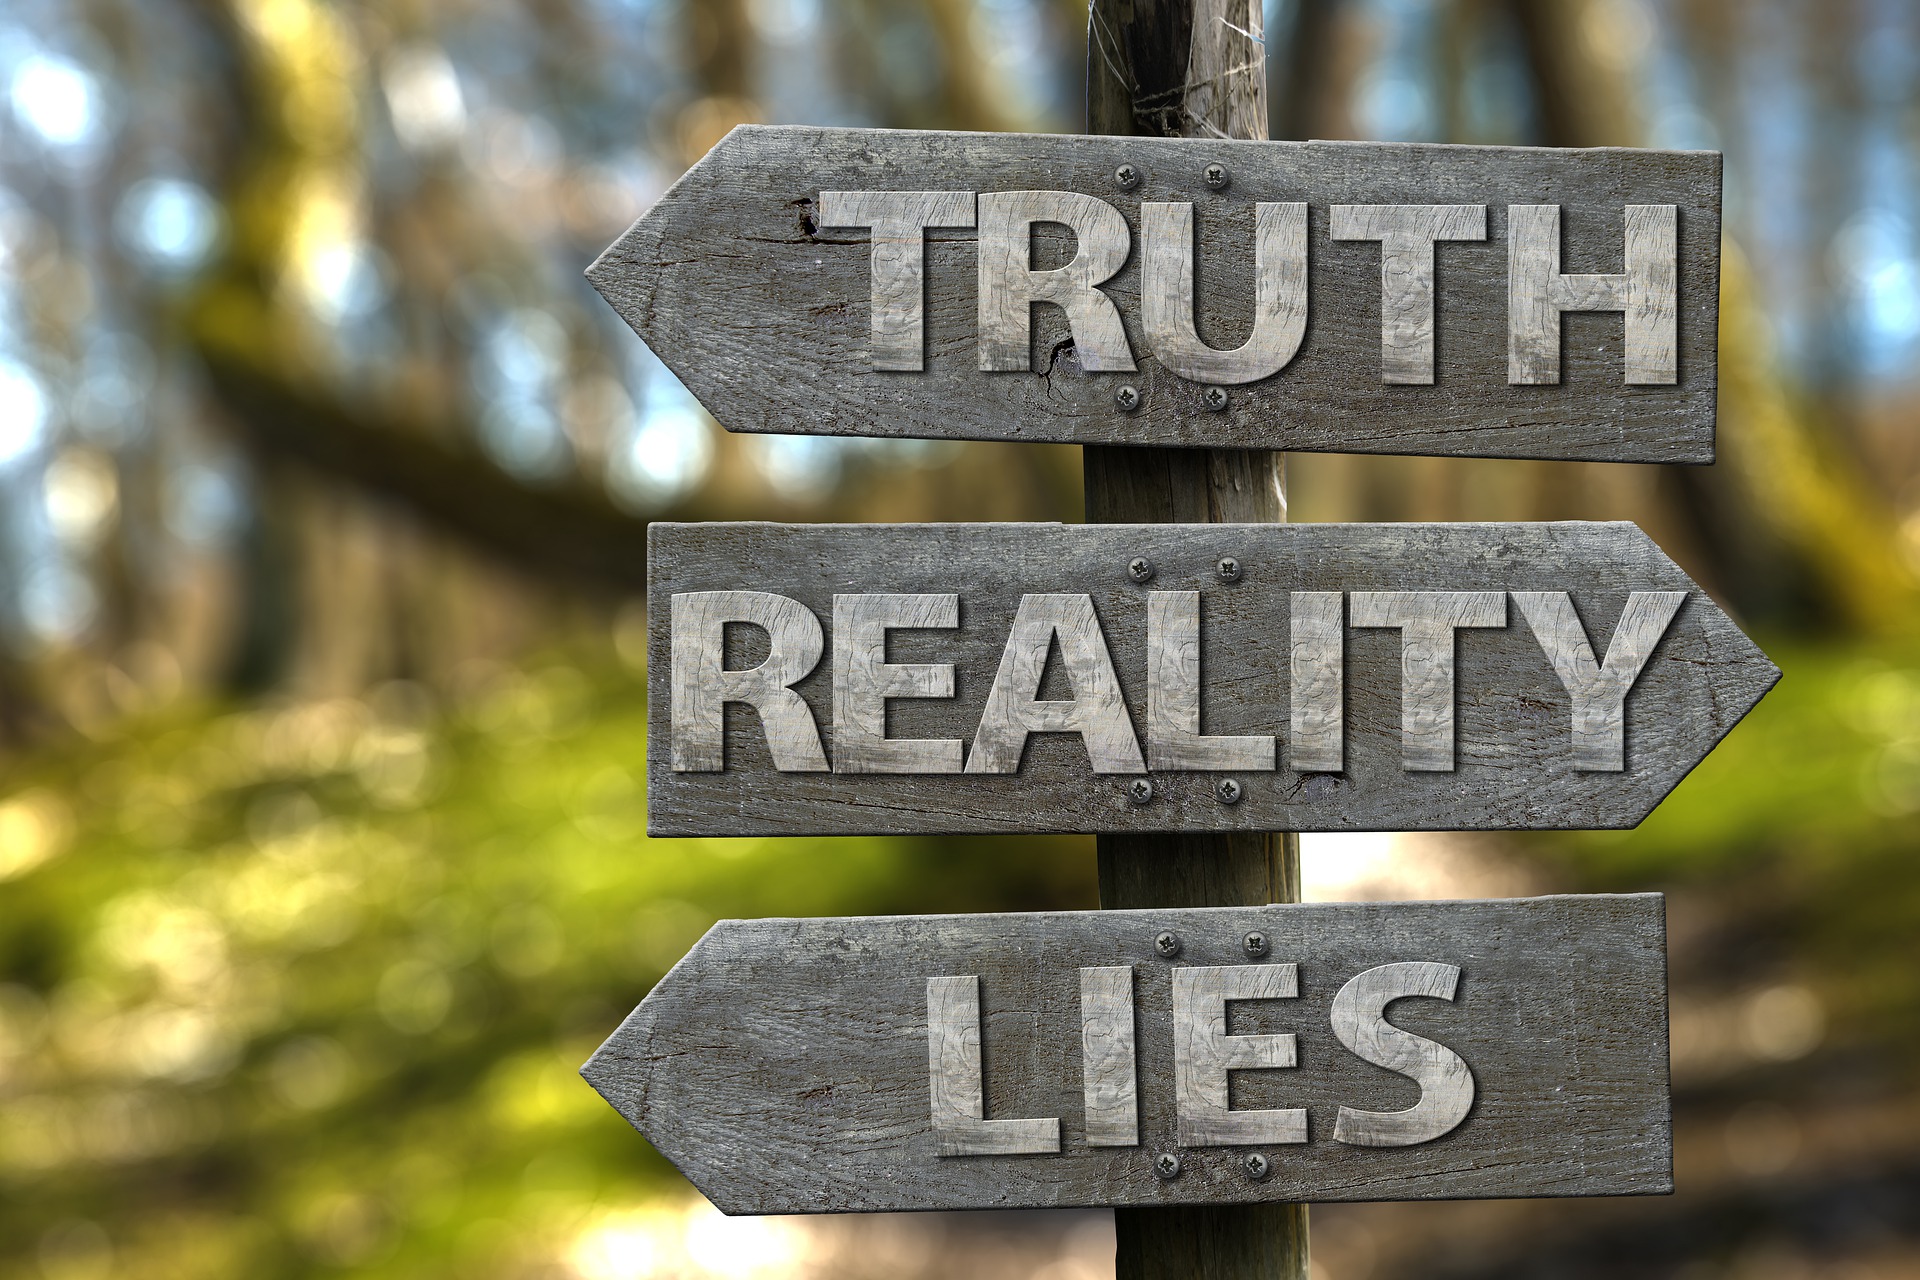 Wegweiser "Wahrheit", "Lüge", "Realität"